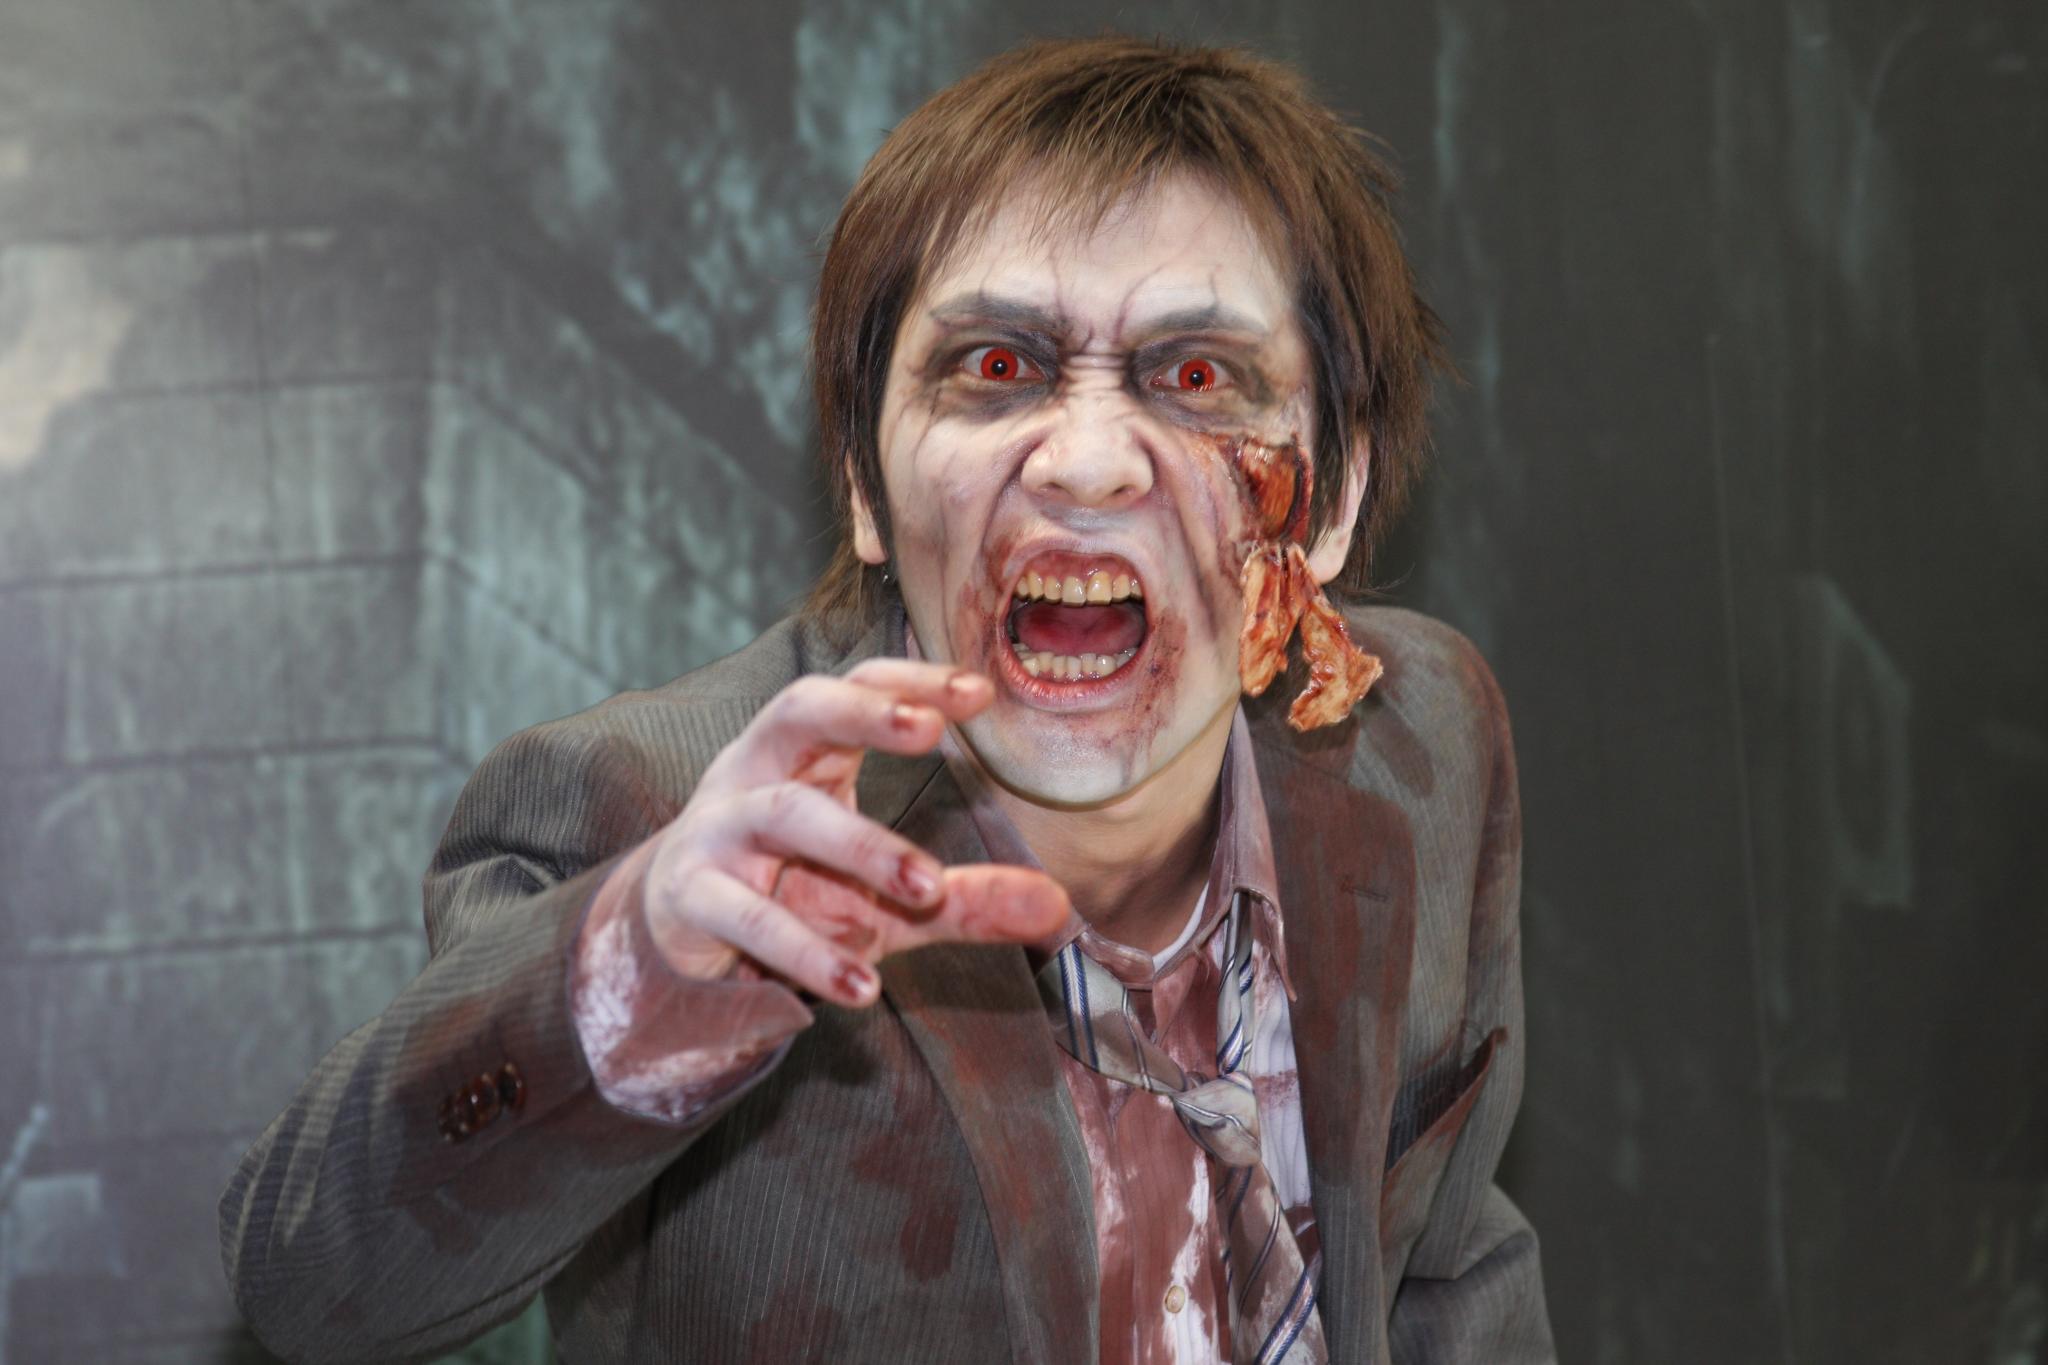 Milujete horory? V listopadu na vás v Dětenicích čekají speciální zombie prohlídky